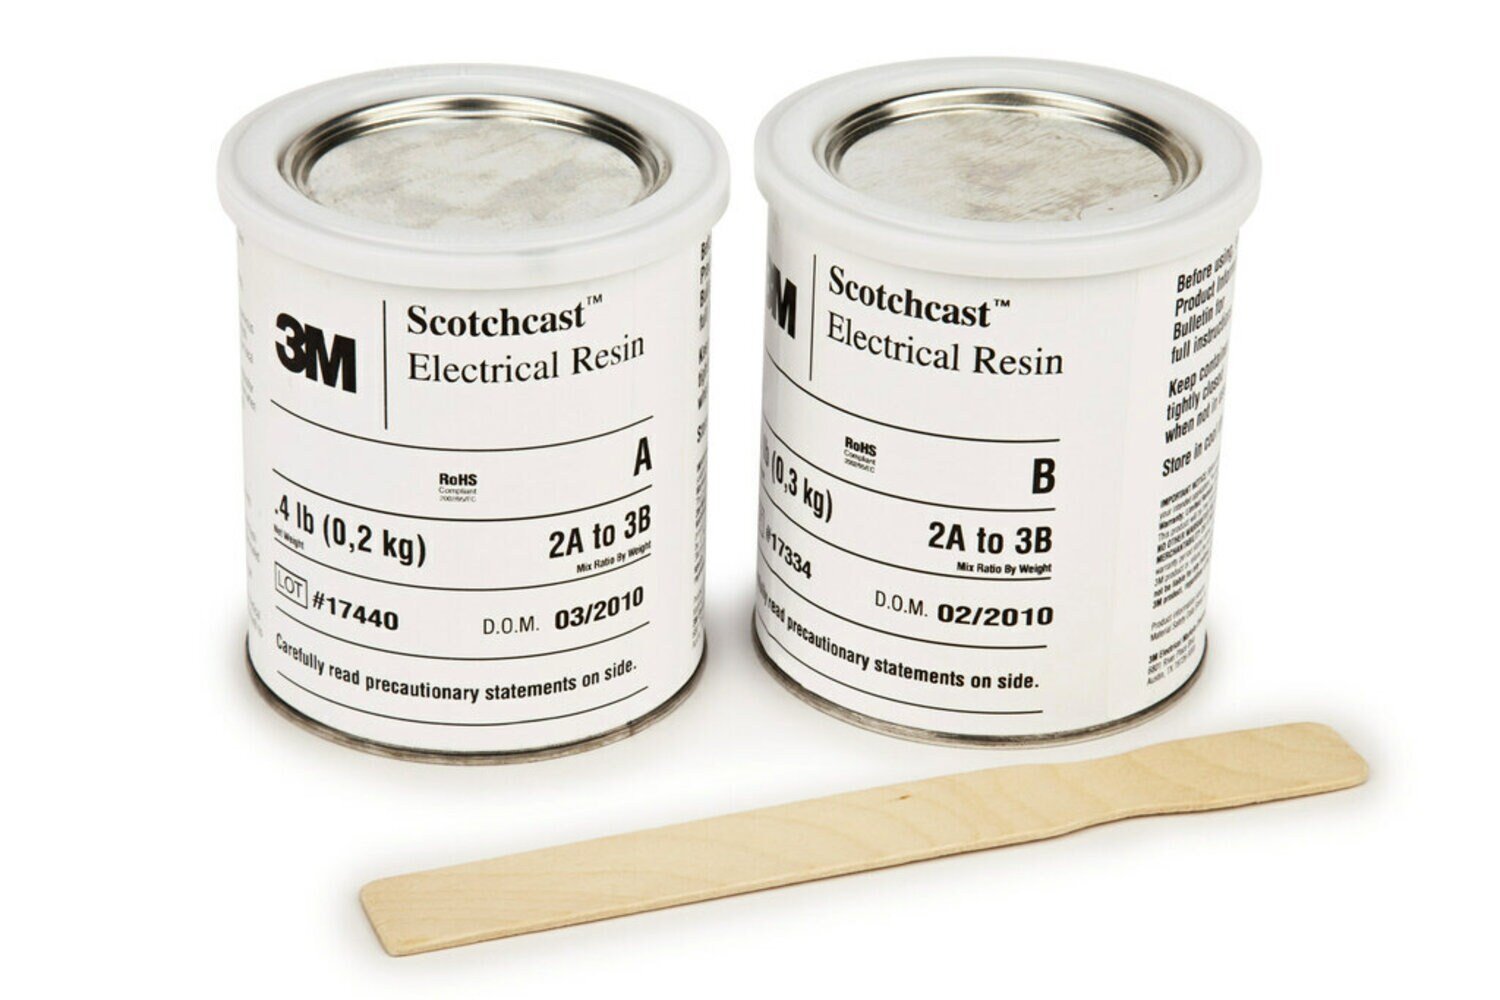 7010319287 - 3M Scotchcast Electrical Resin 282 Part B (45 lb.), 1 Drum